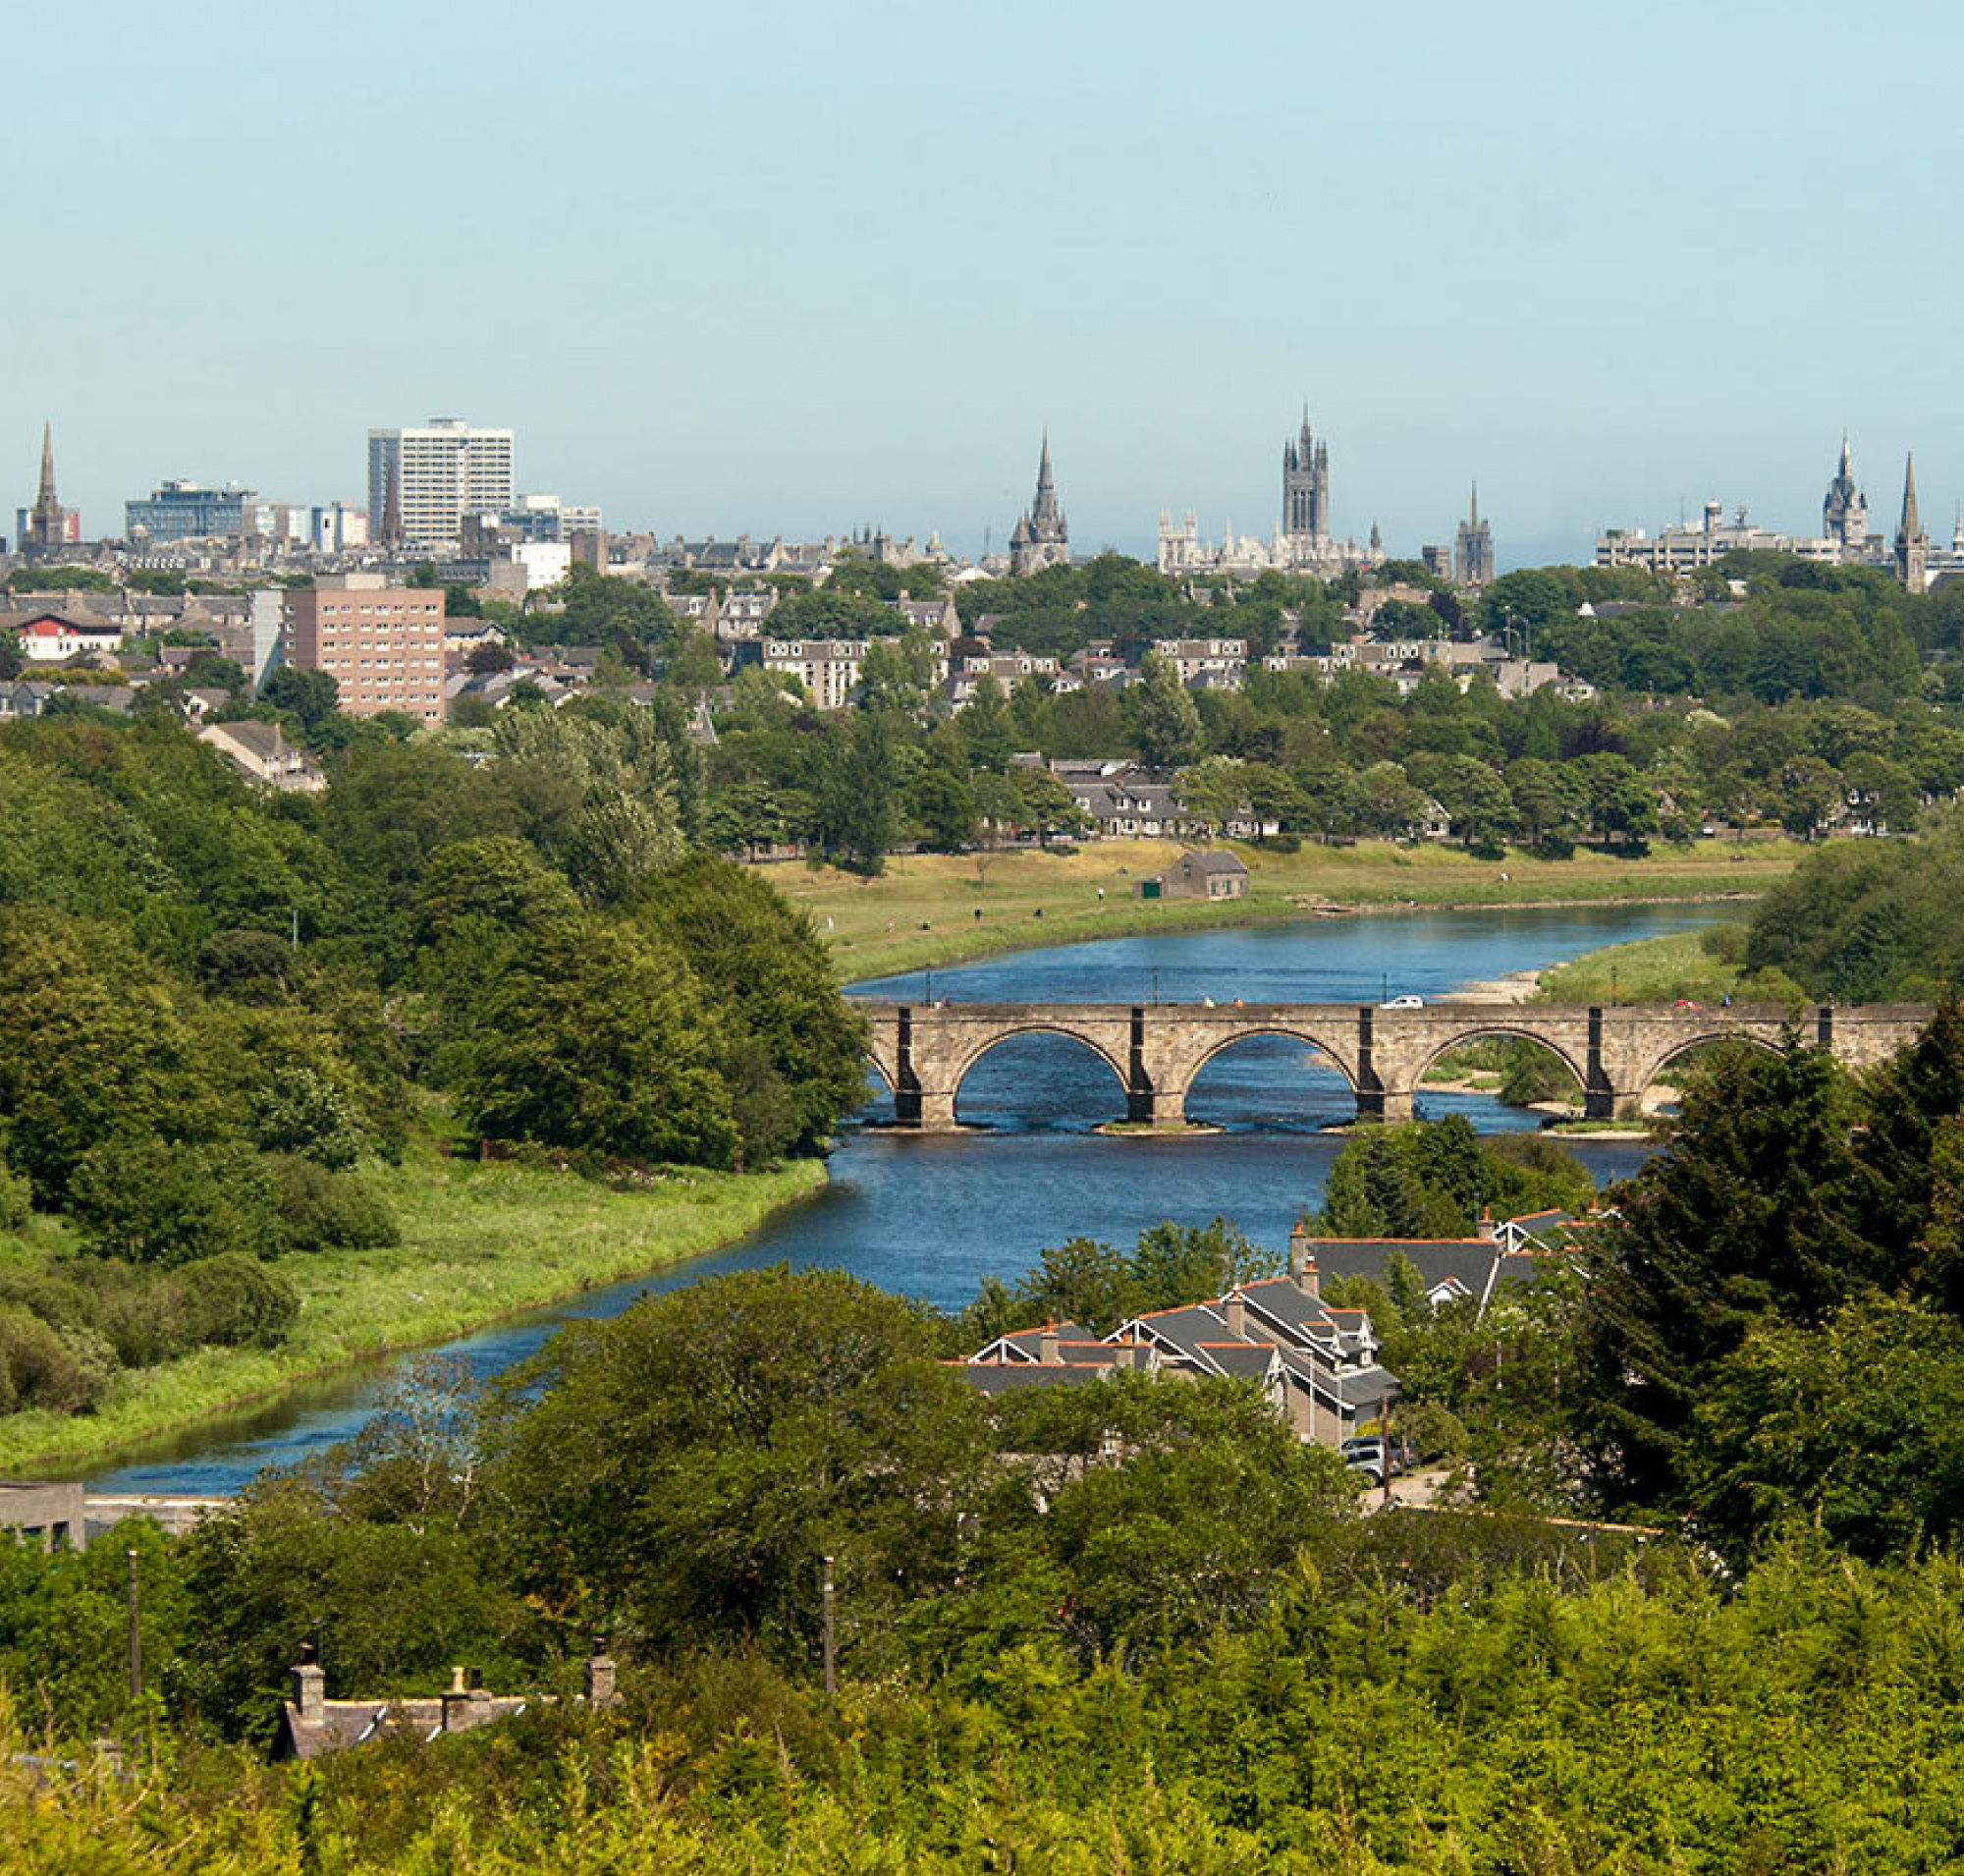 Hình ảnh từ trên không nhìn xuống thành phố với cây cầu đá bắt chéo dòng sông, được bao quanh bởi cây xanh và sự kết hợp với khung cảnh hiện đại 